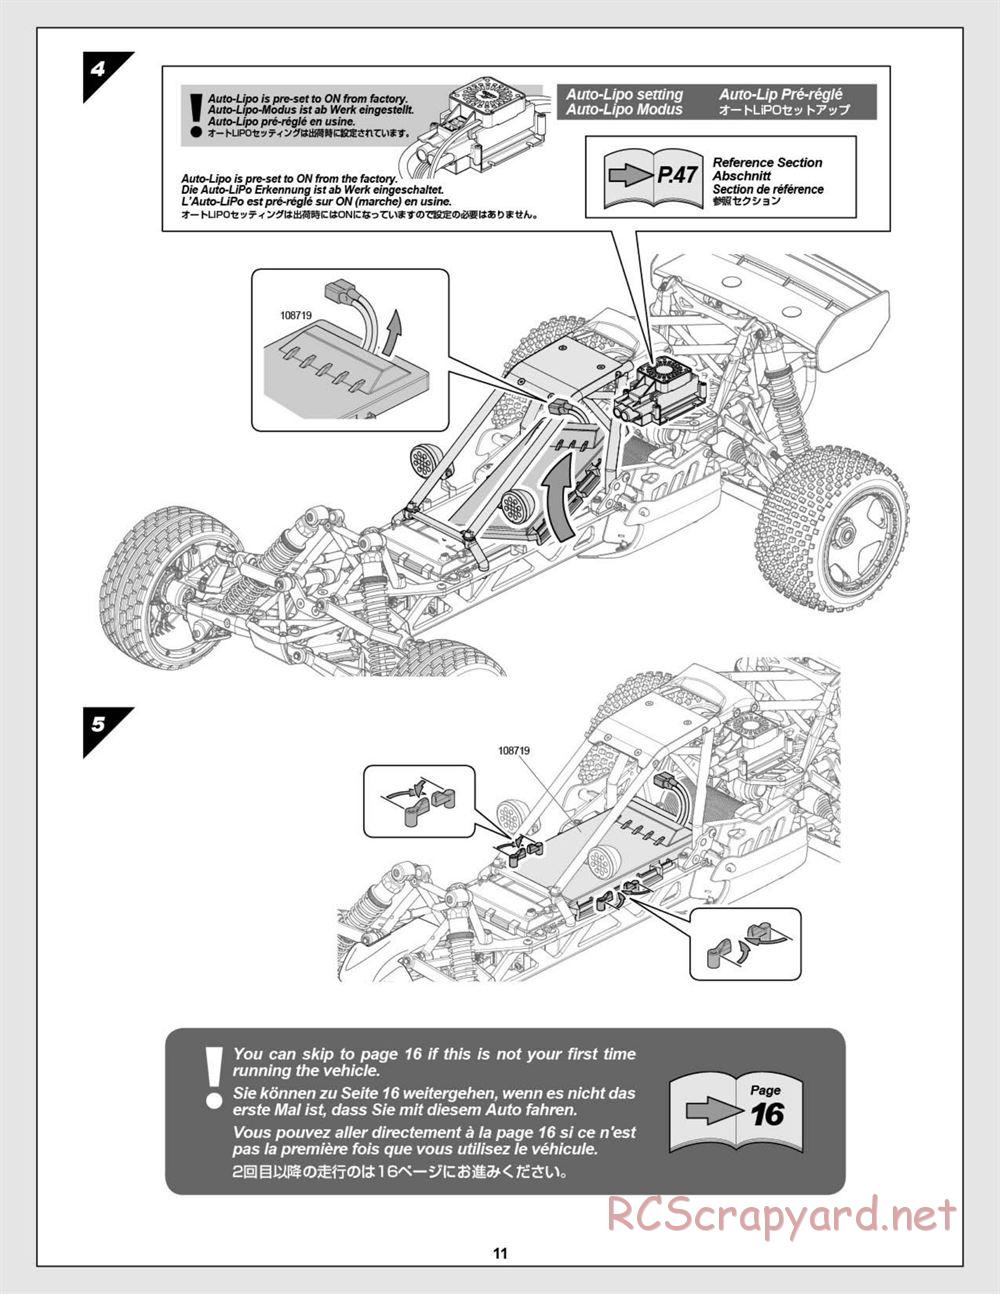 HPI - Baja 5B Flux Buggy - Manual - Page 11